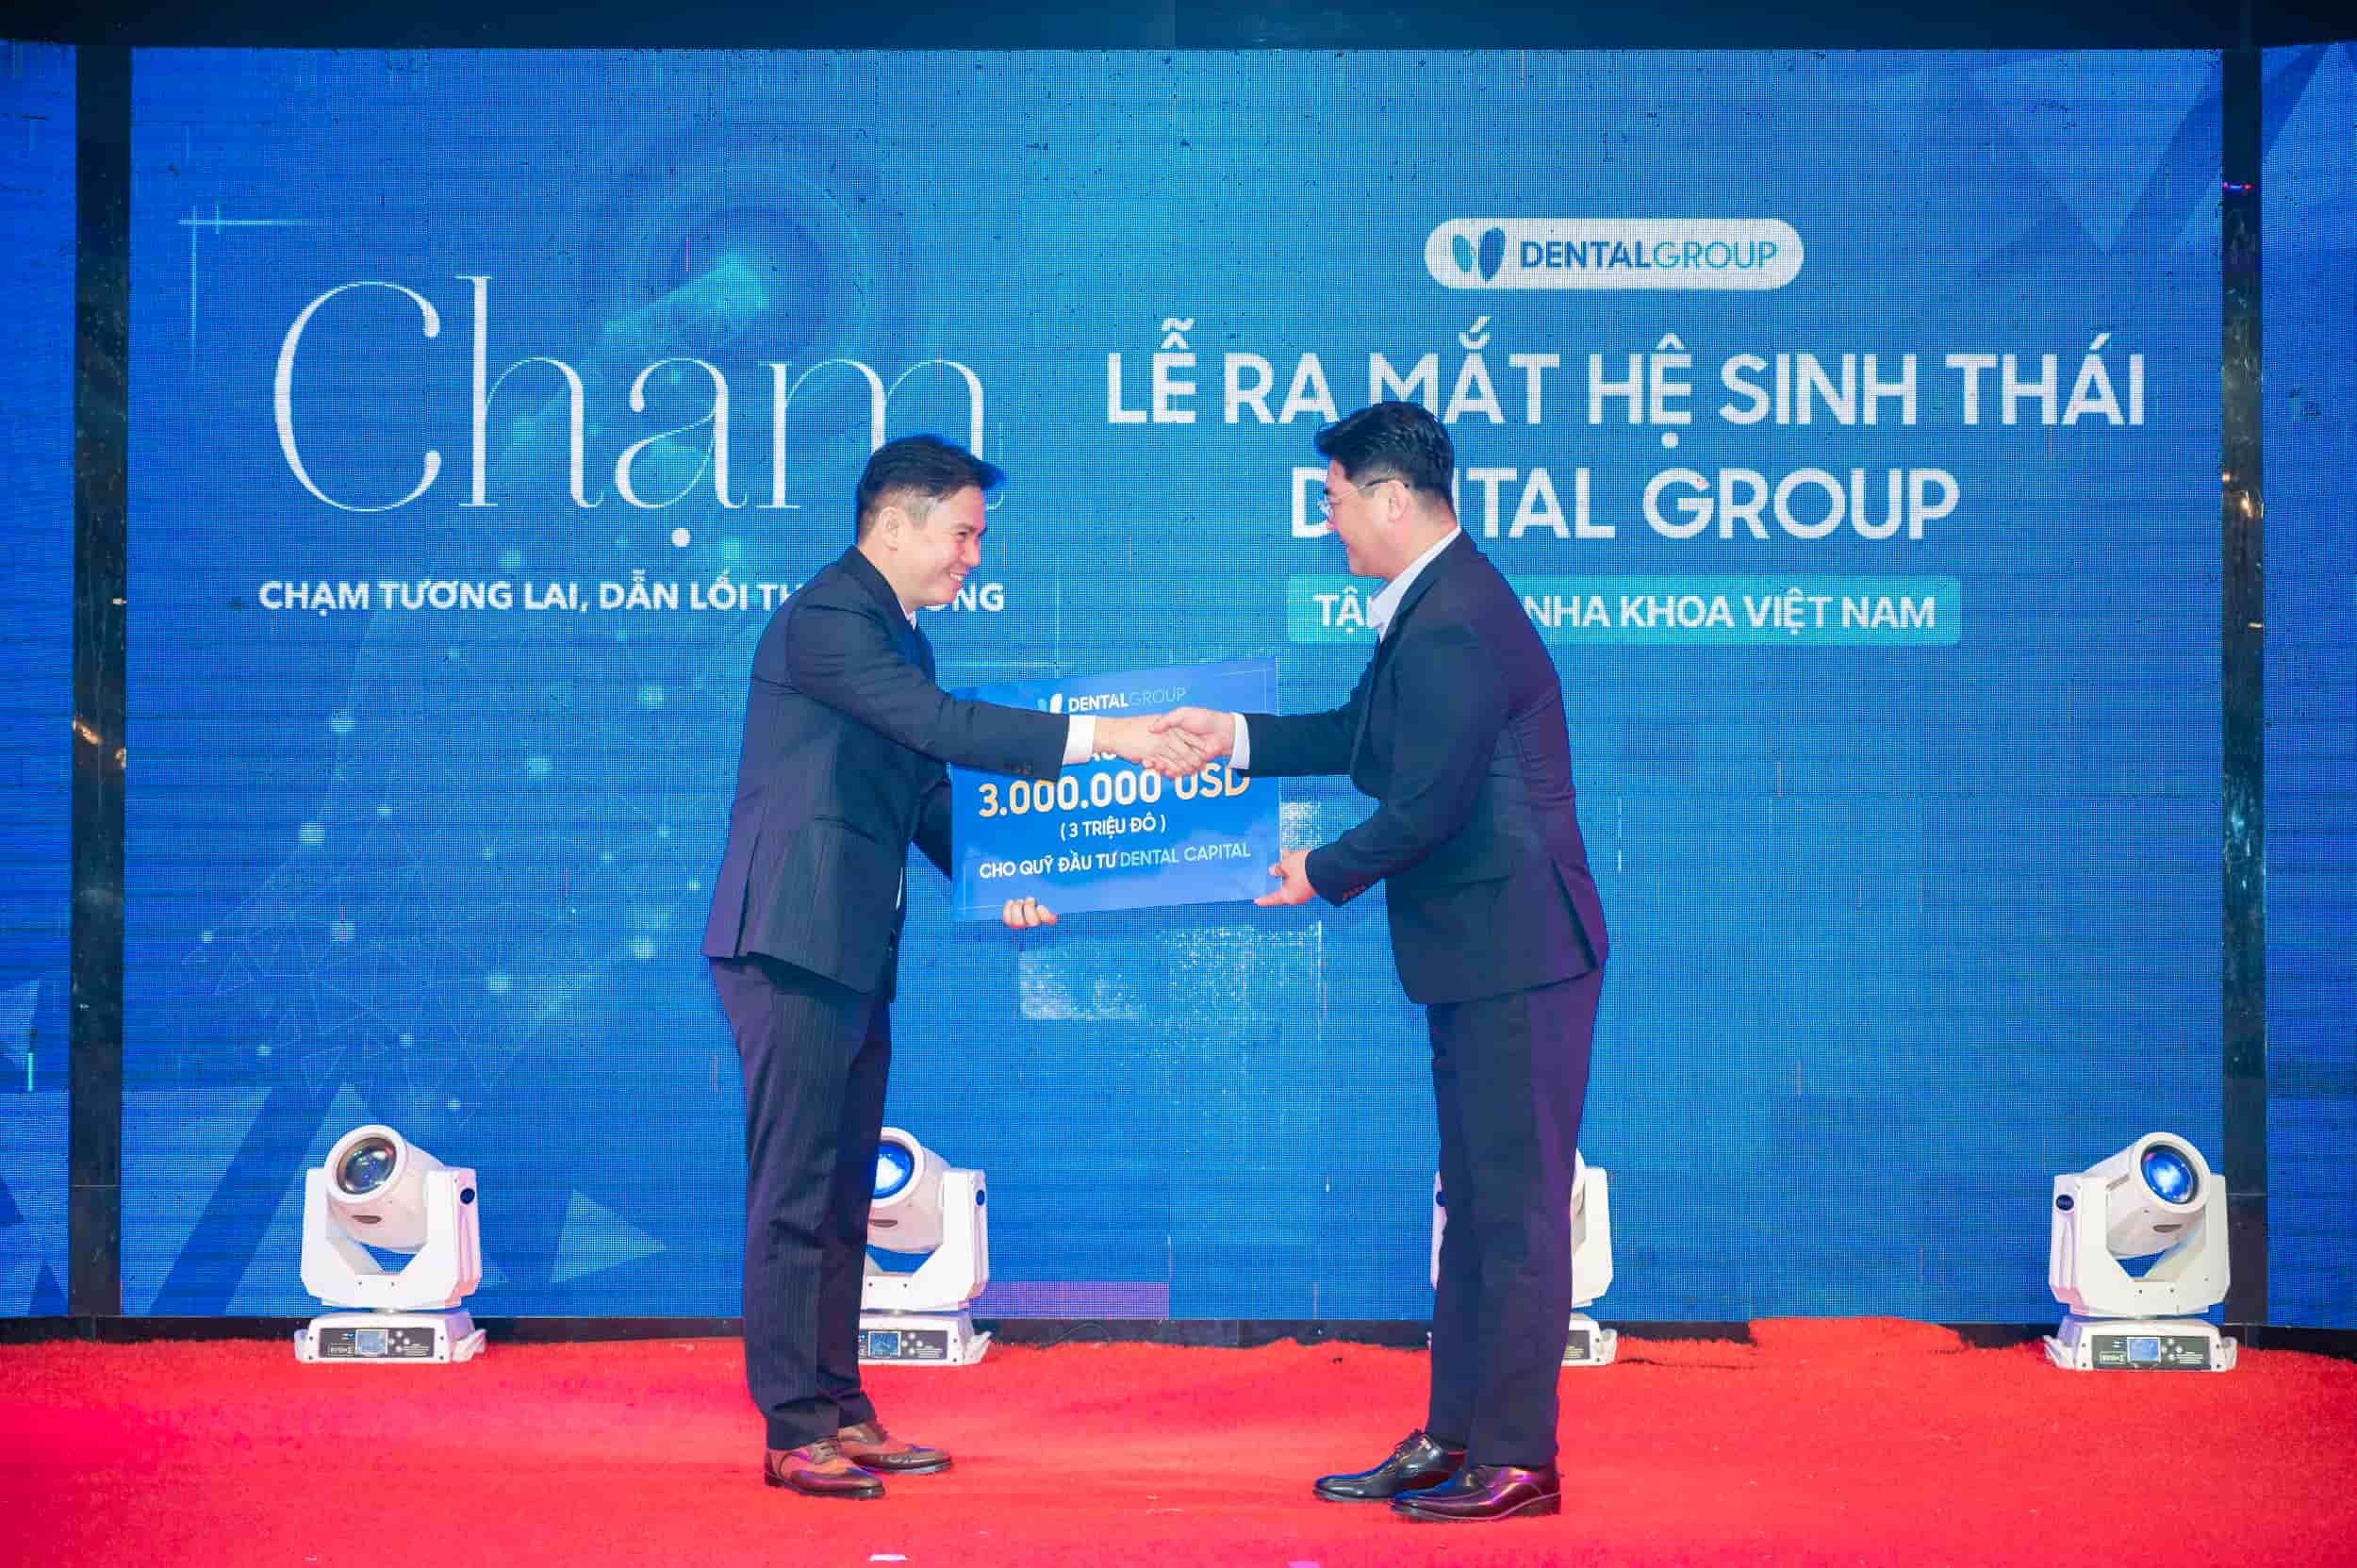 Ông Nguyễn Văn Bằng - Chủ tịch HĐQT tập đoàn Dental Group nhận đầu tư từ đại diện Quỹ Đầu tư Nha khoa Hàn Quốc